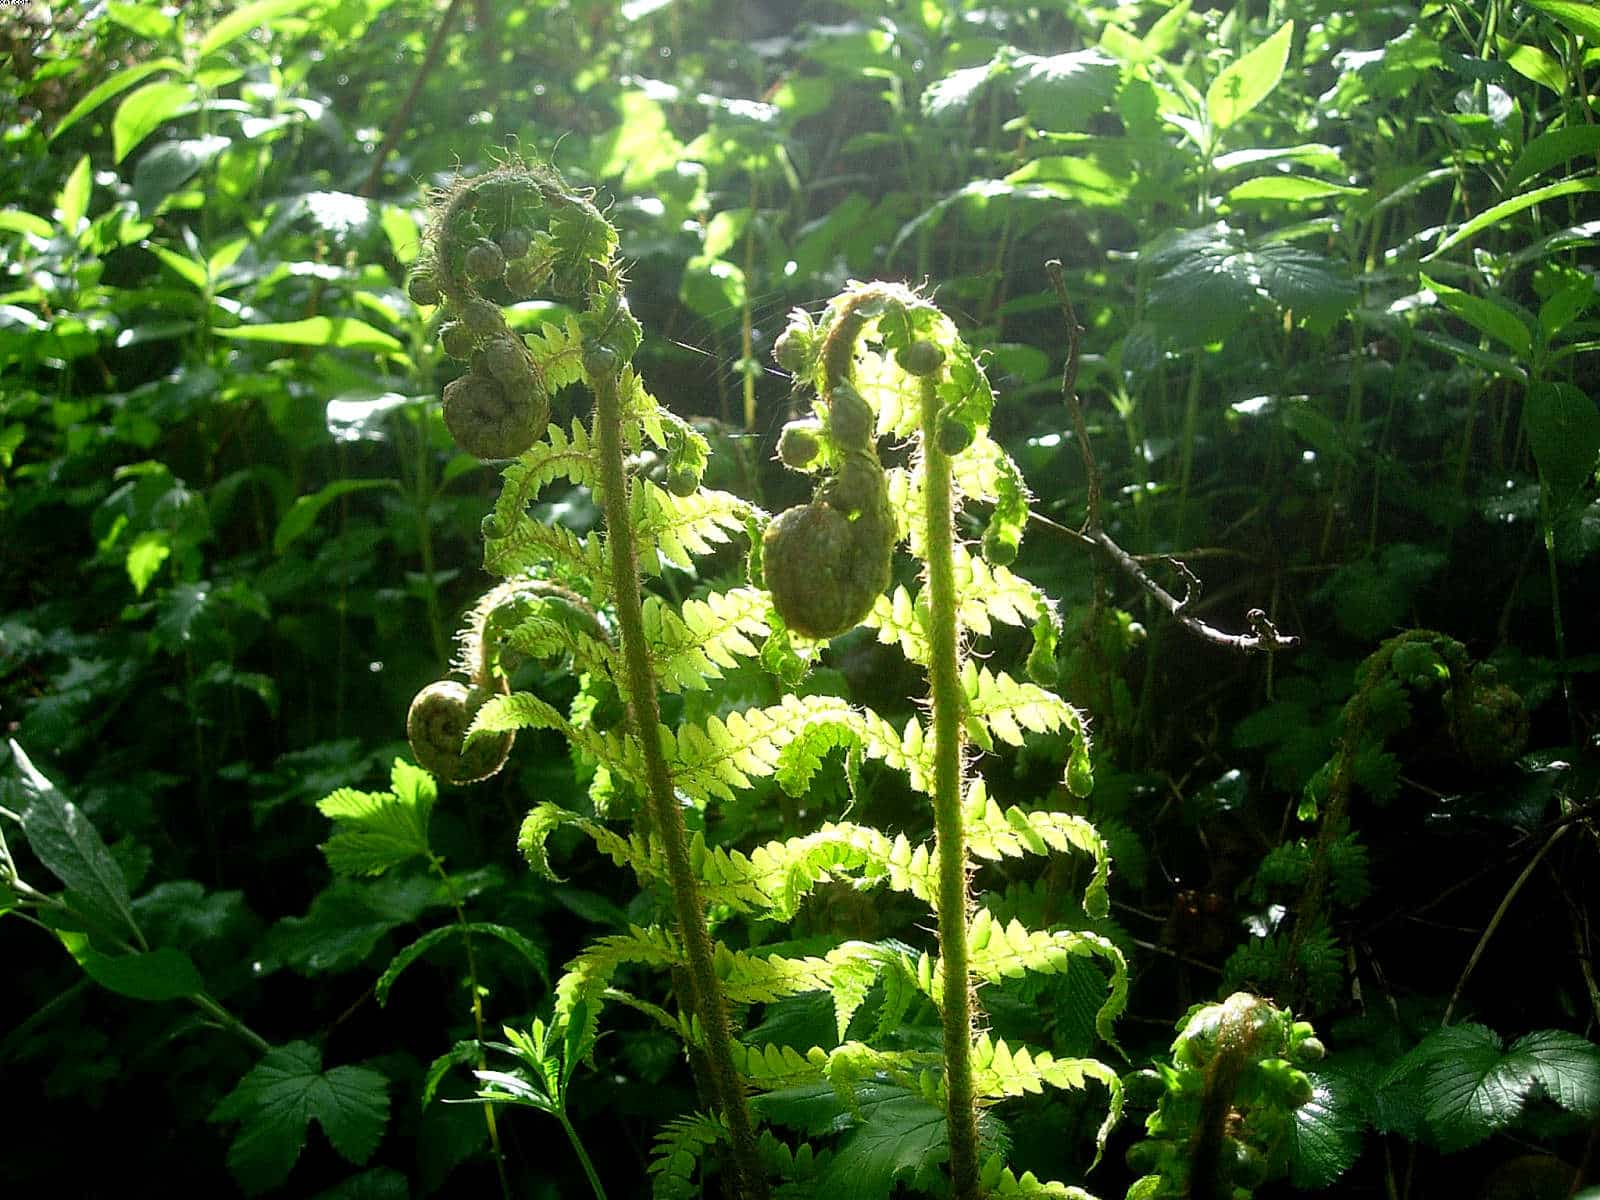 Ferns unfolding in spring in Kilminorth Woods Looe